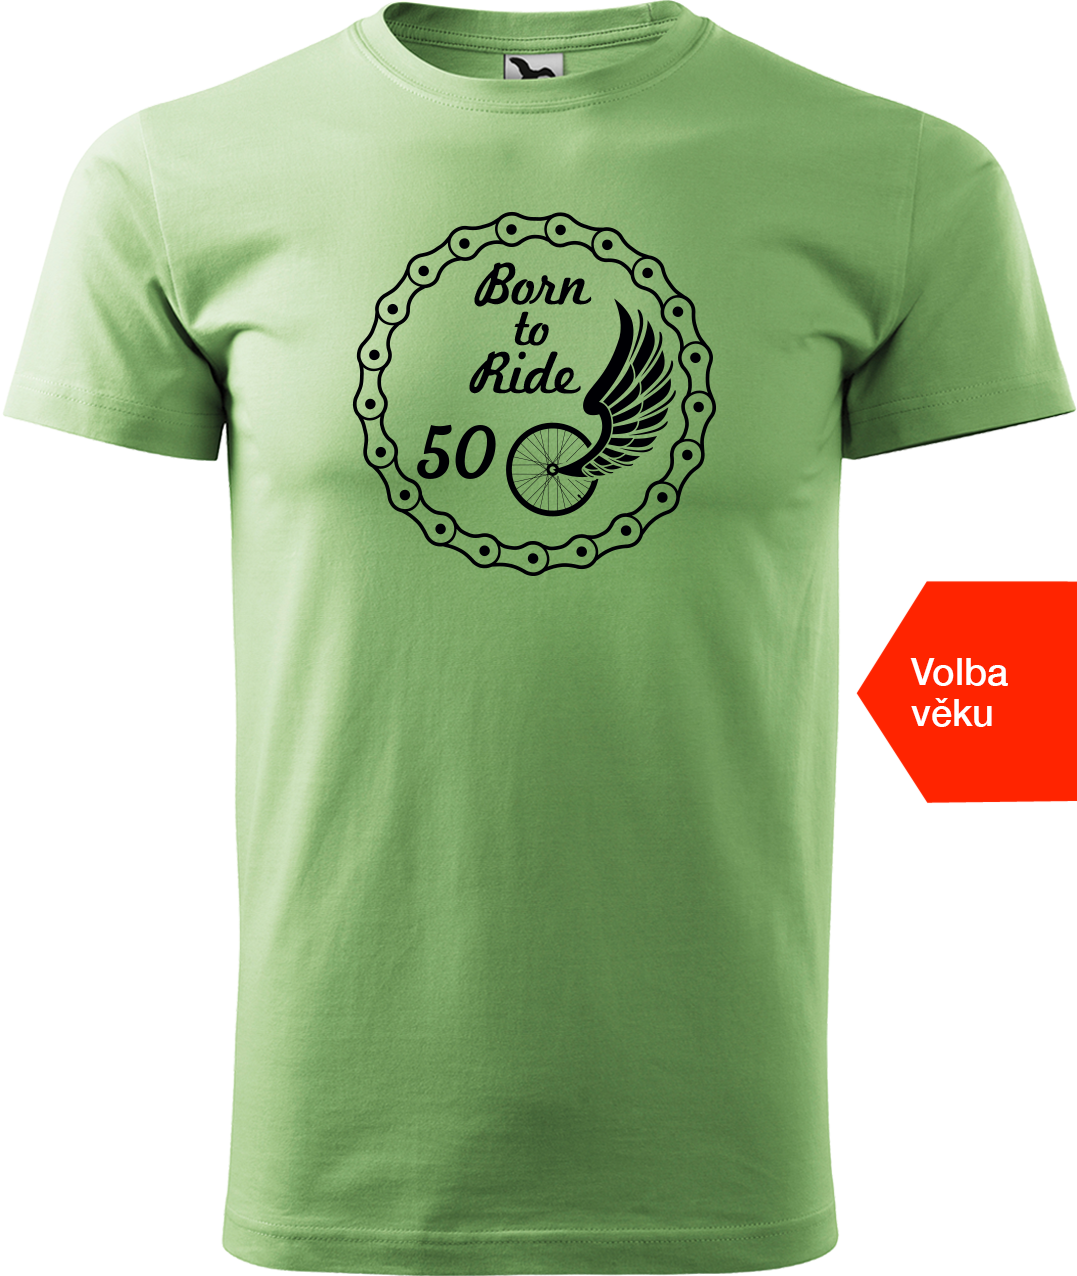 Pánské tričko pro cyklistu s věkem - Born to Ride (wings) Velikost: M, Barva: Trávově zelená (39)